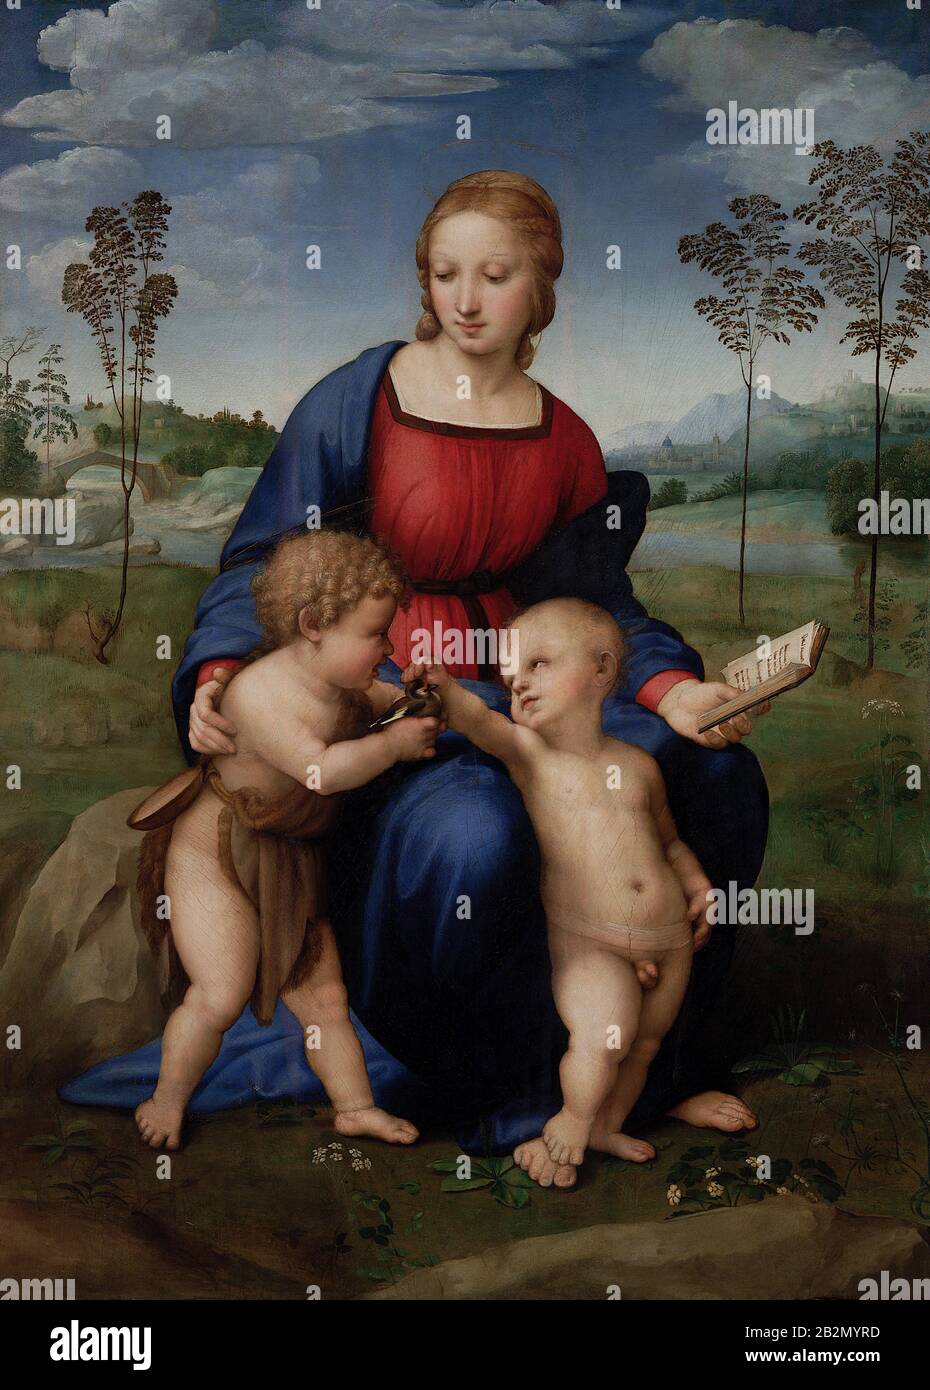 Madonna du Goldfinch (1506) peinture de Raphaël (Raffaello Sanzio da Urbino) - Très haute résolution et image de qualité Banque D'Images